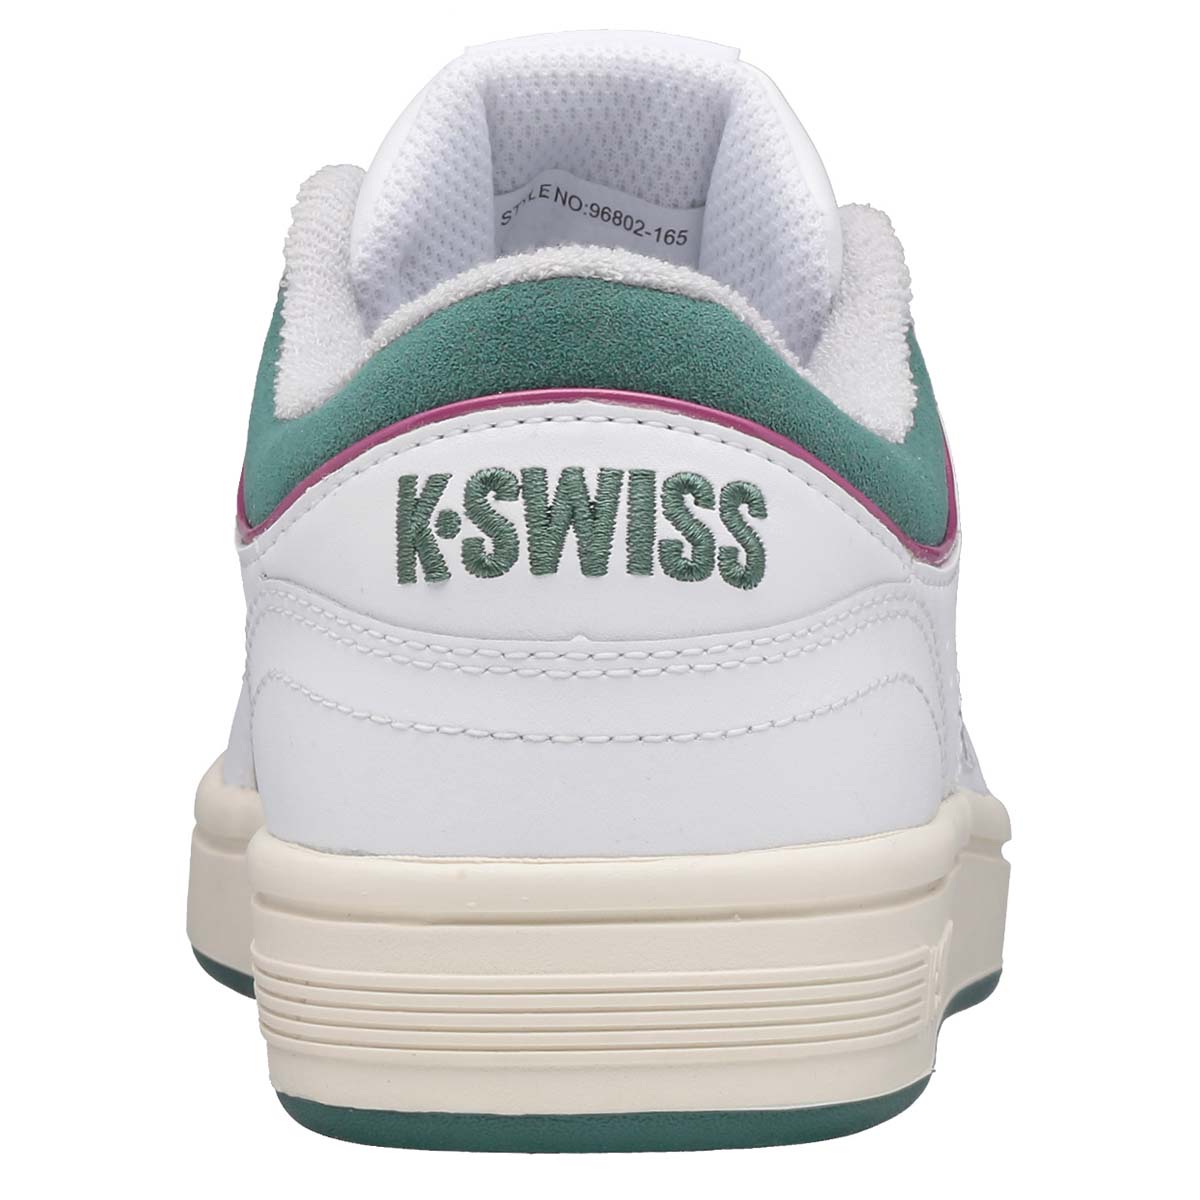 K-SWISS North Court Damen Sneaker Sportschuh 96802-165-M White